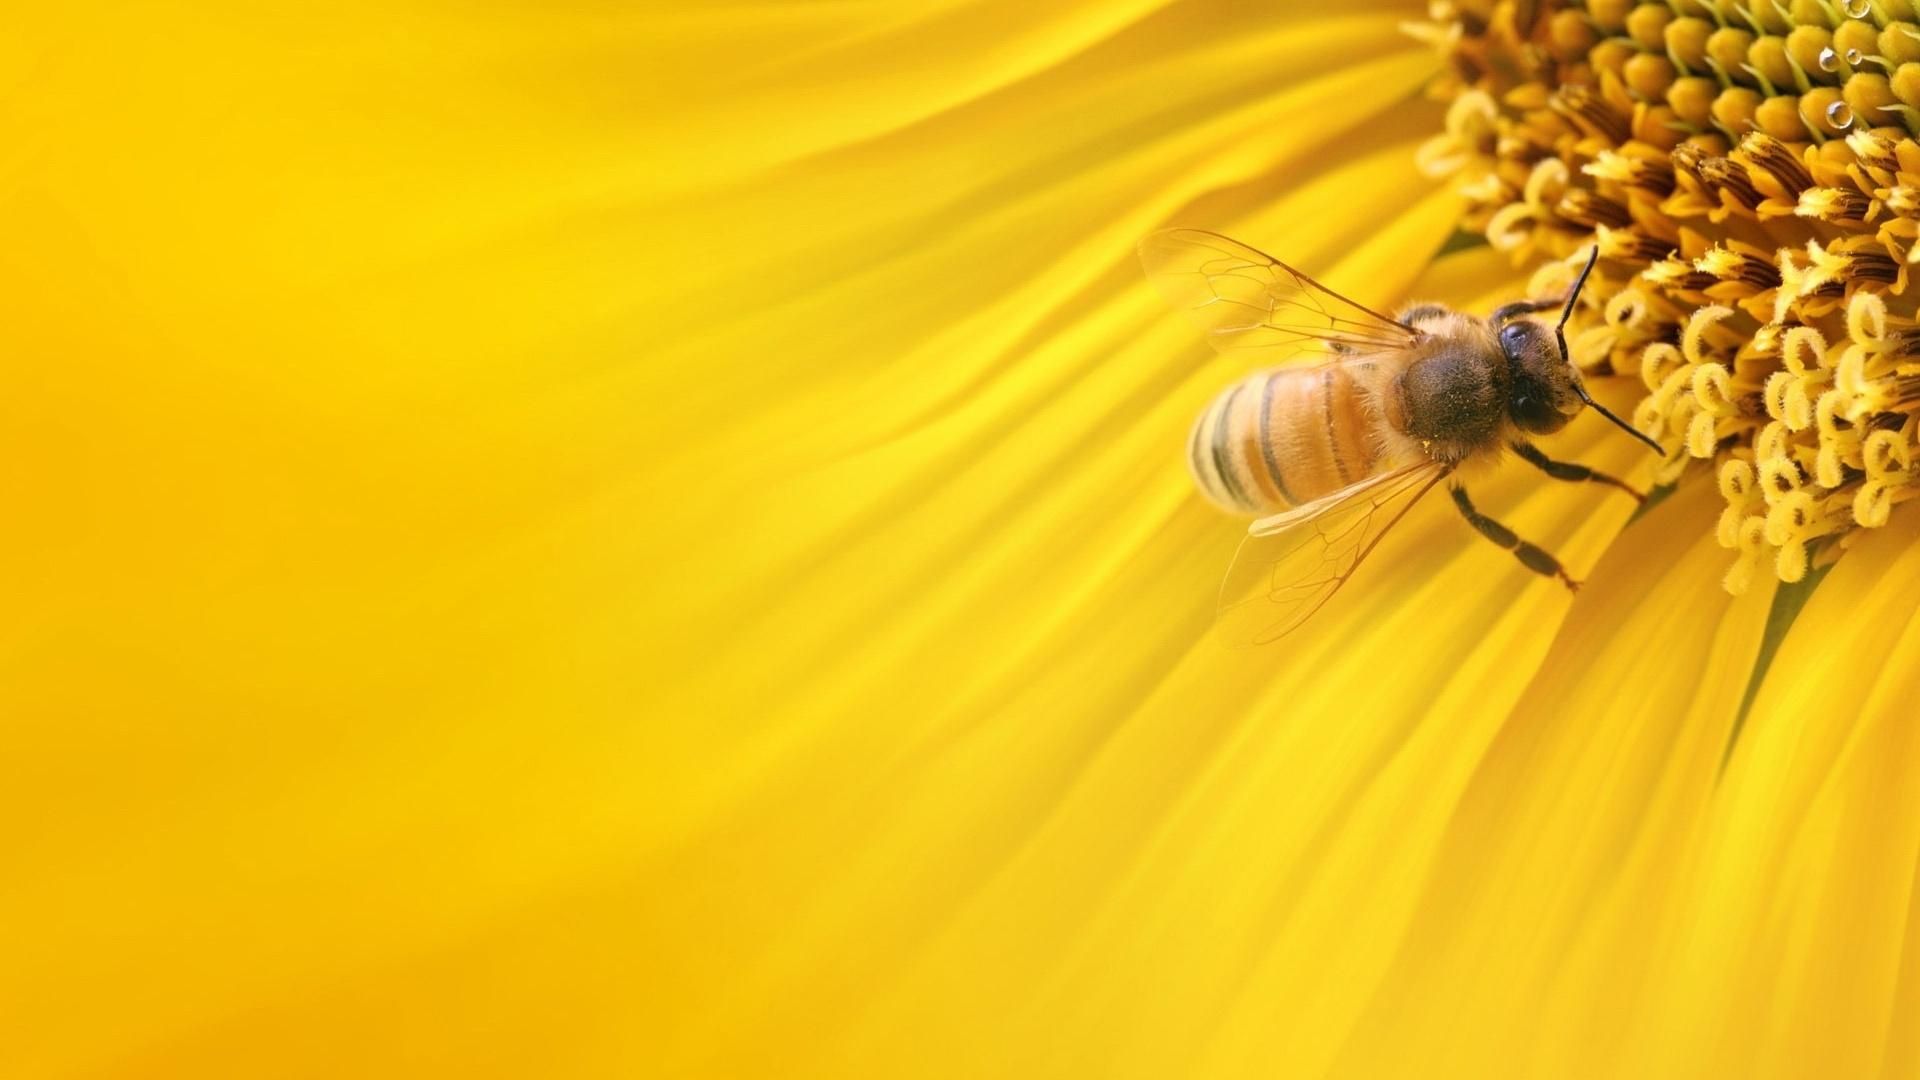 Bee wallpaper download